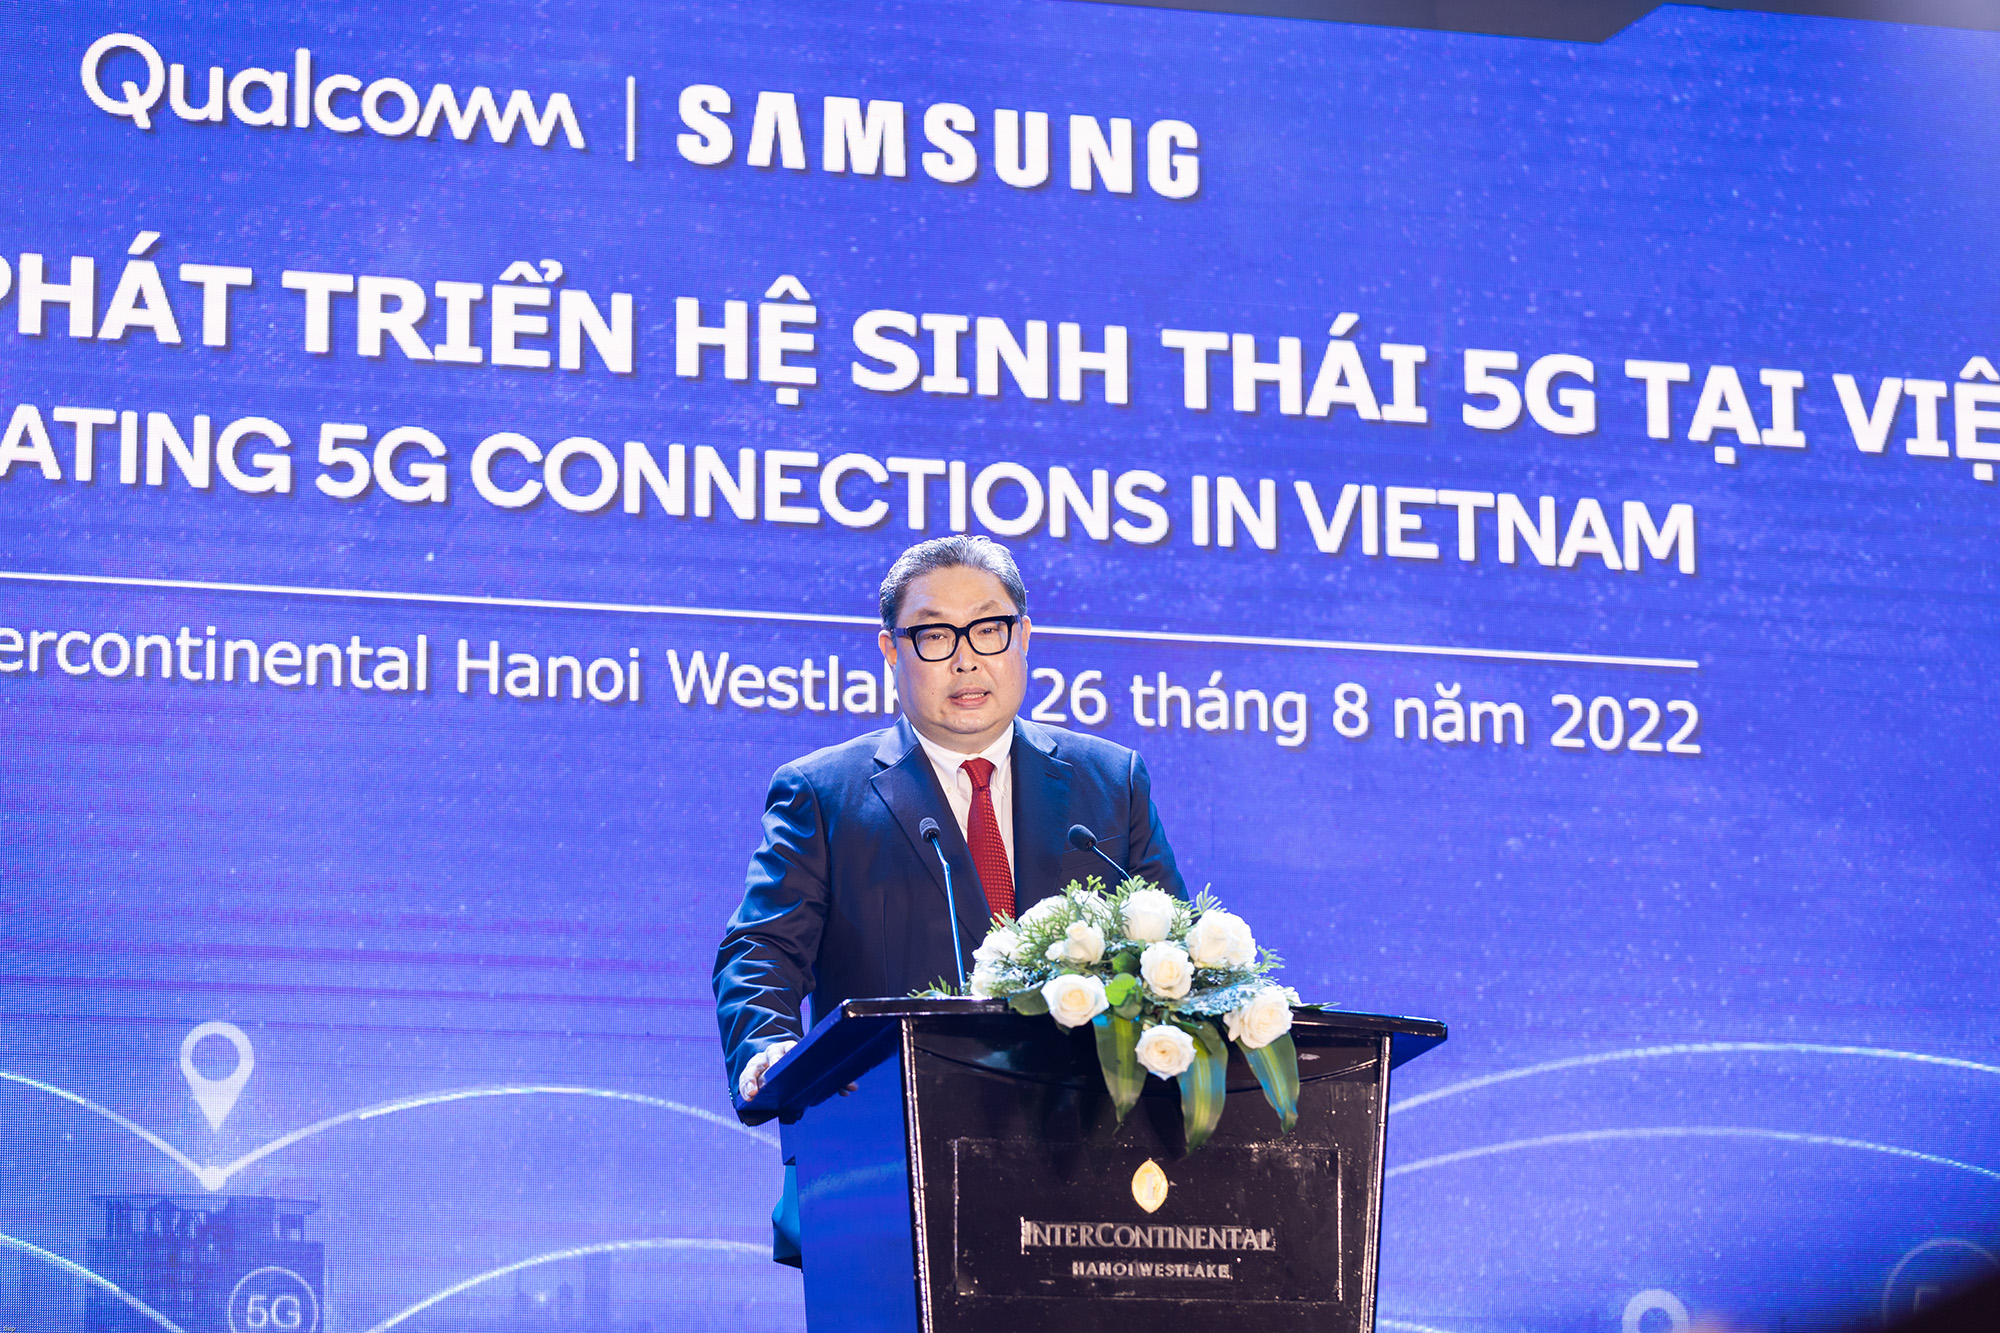 Qualcomm và Samsung dẫn đầu trong việc thúc đẩy 5G tại Việt Nam - Ảnh 3.